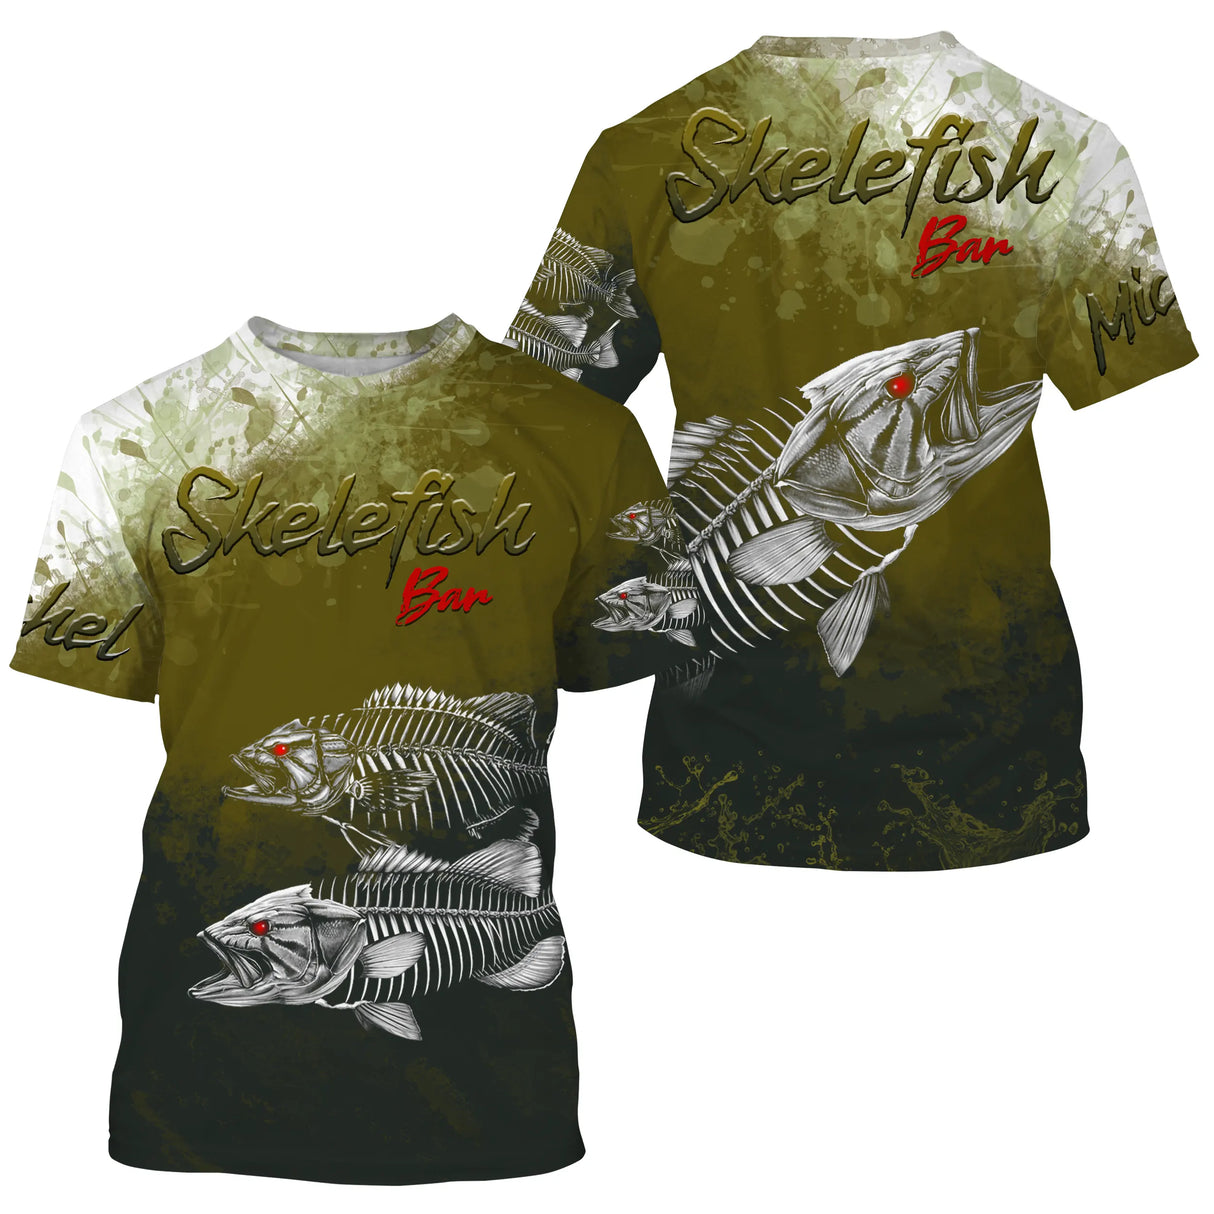 T-shirt da pesca anti-UV personalizzata, regalo originale per pescatori, barra di scheletri - CT30072226